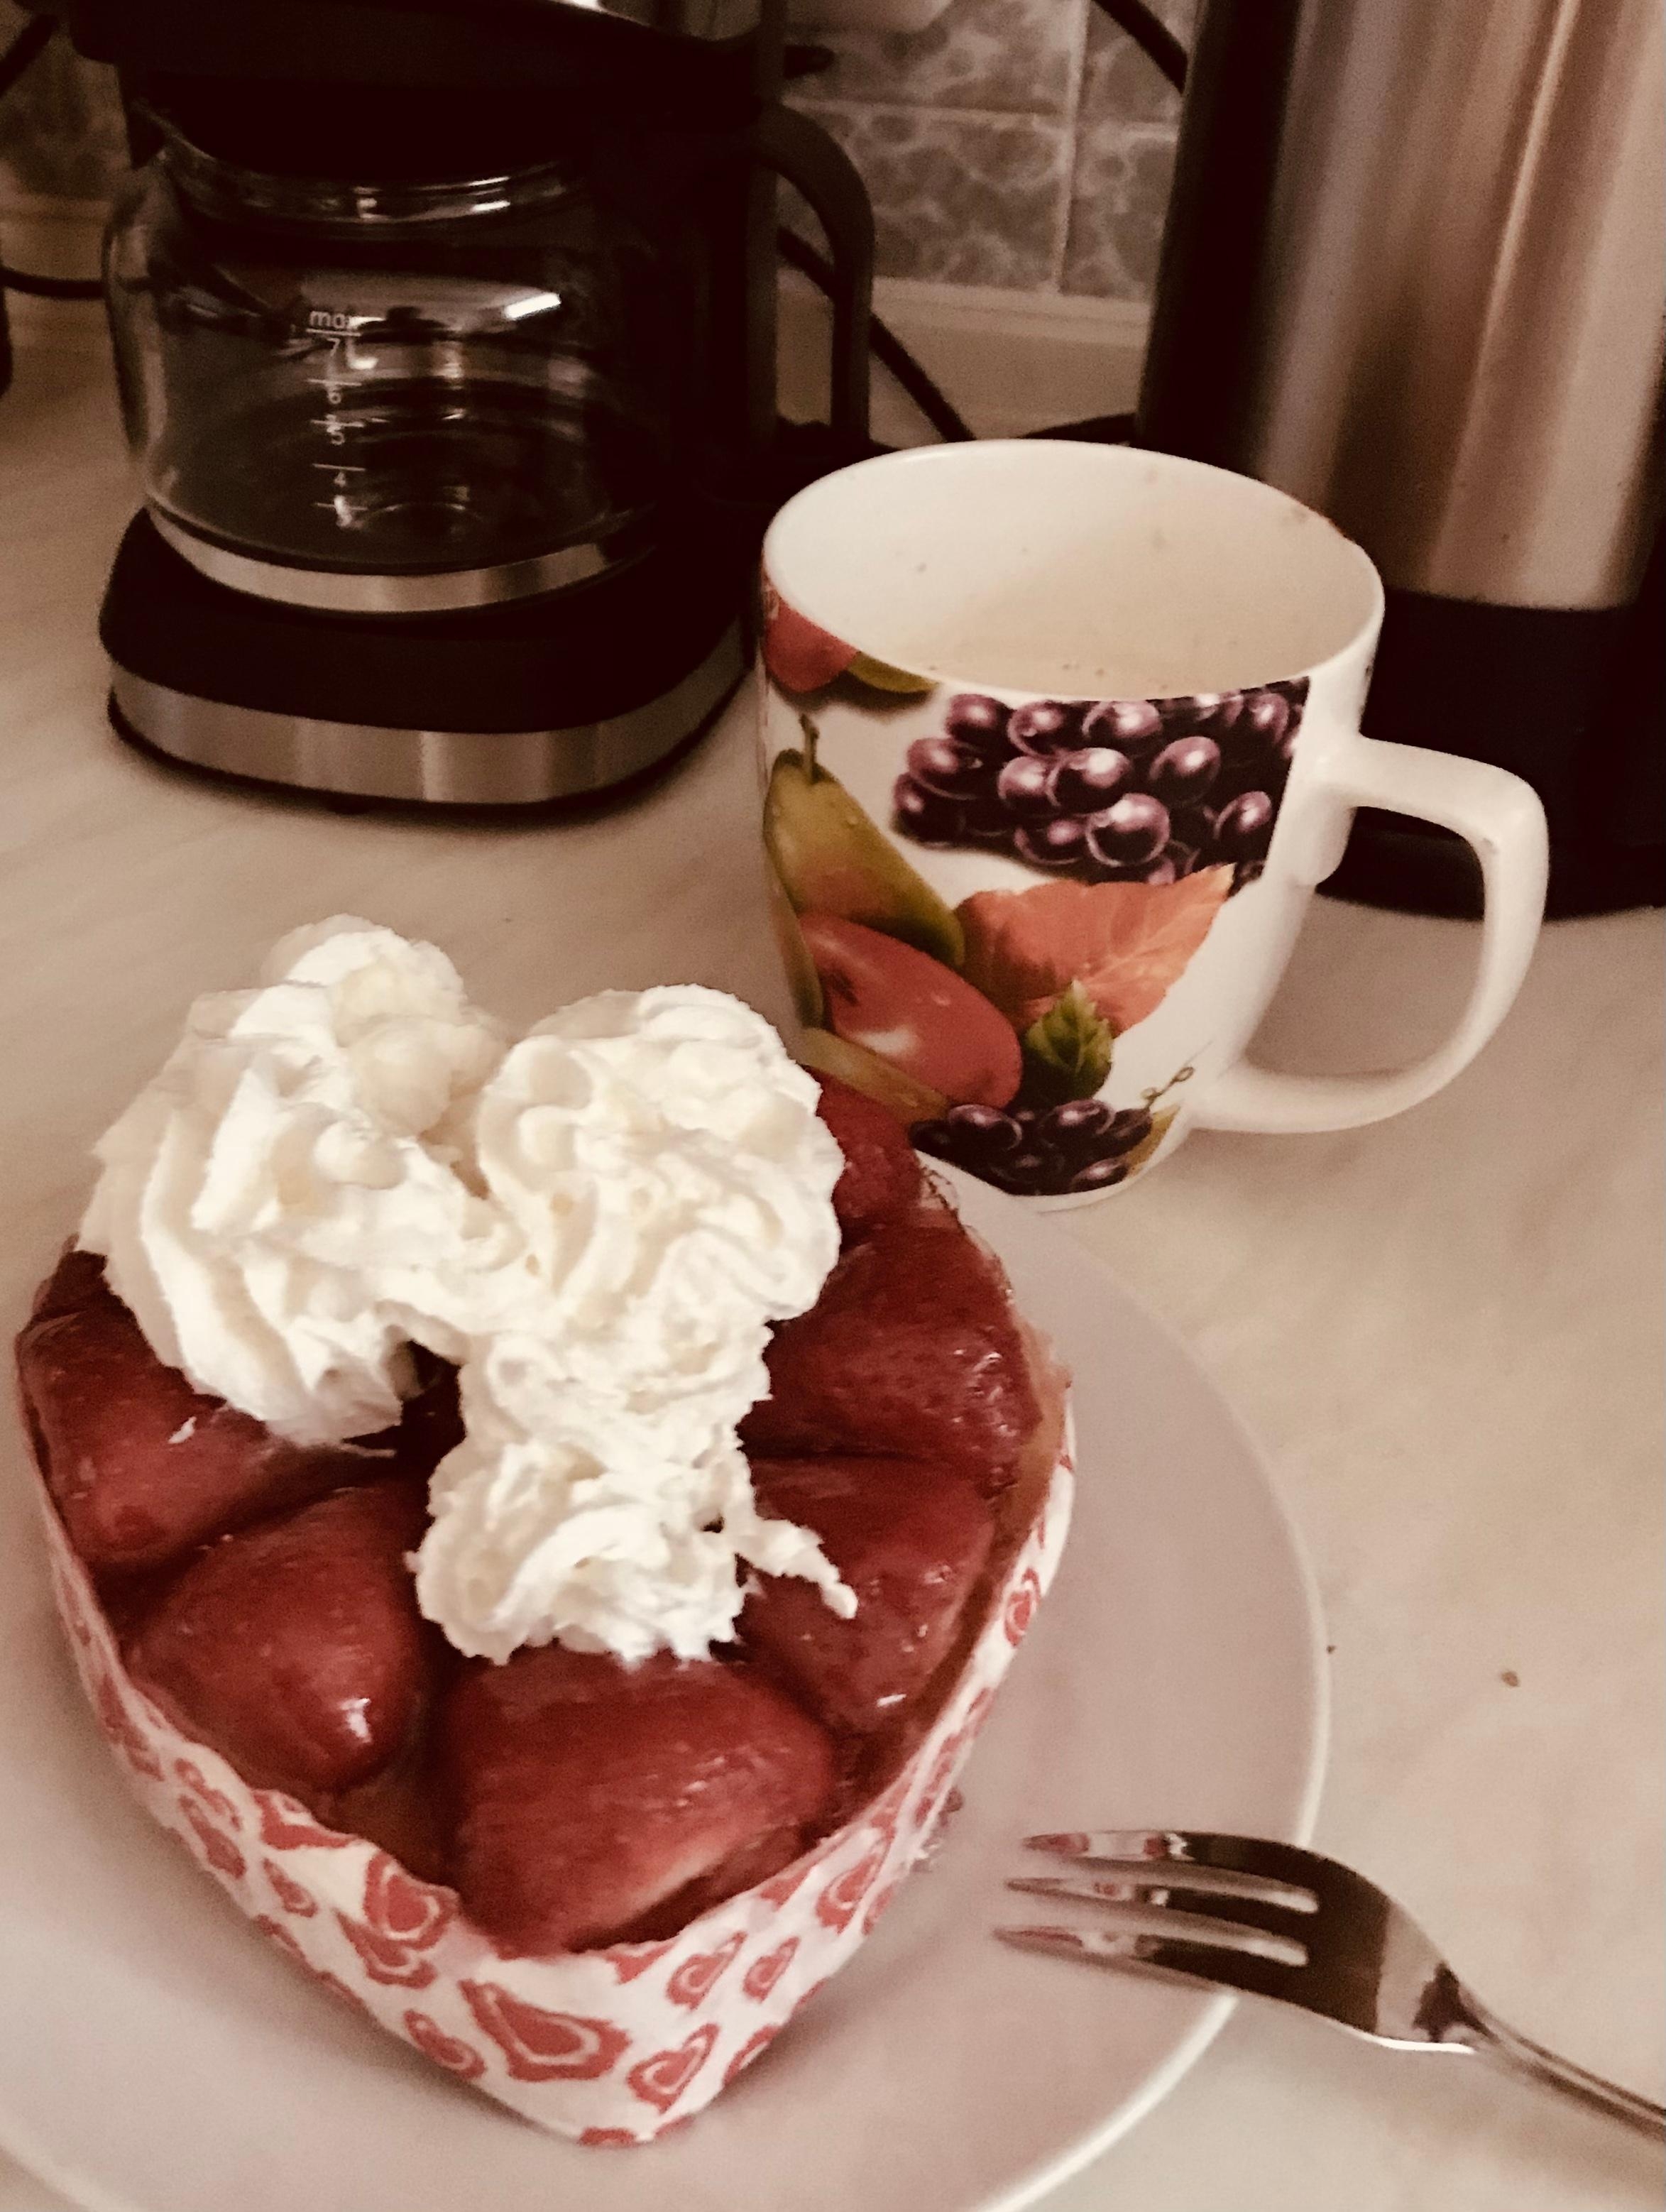 Das musste heute Nachmittag sein 😋 nur für mich!
#erdbeeren #kuchen #kaffee #küche #wochenende